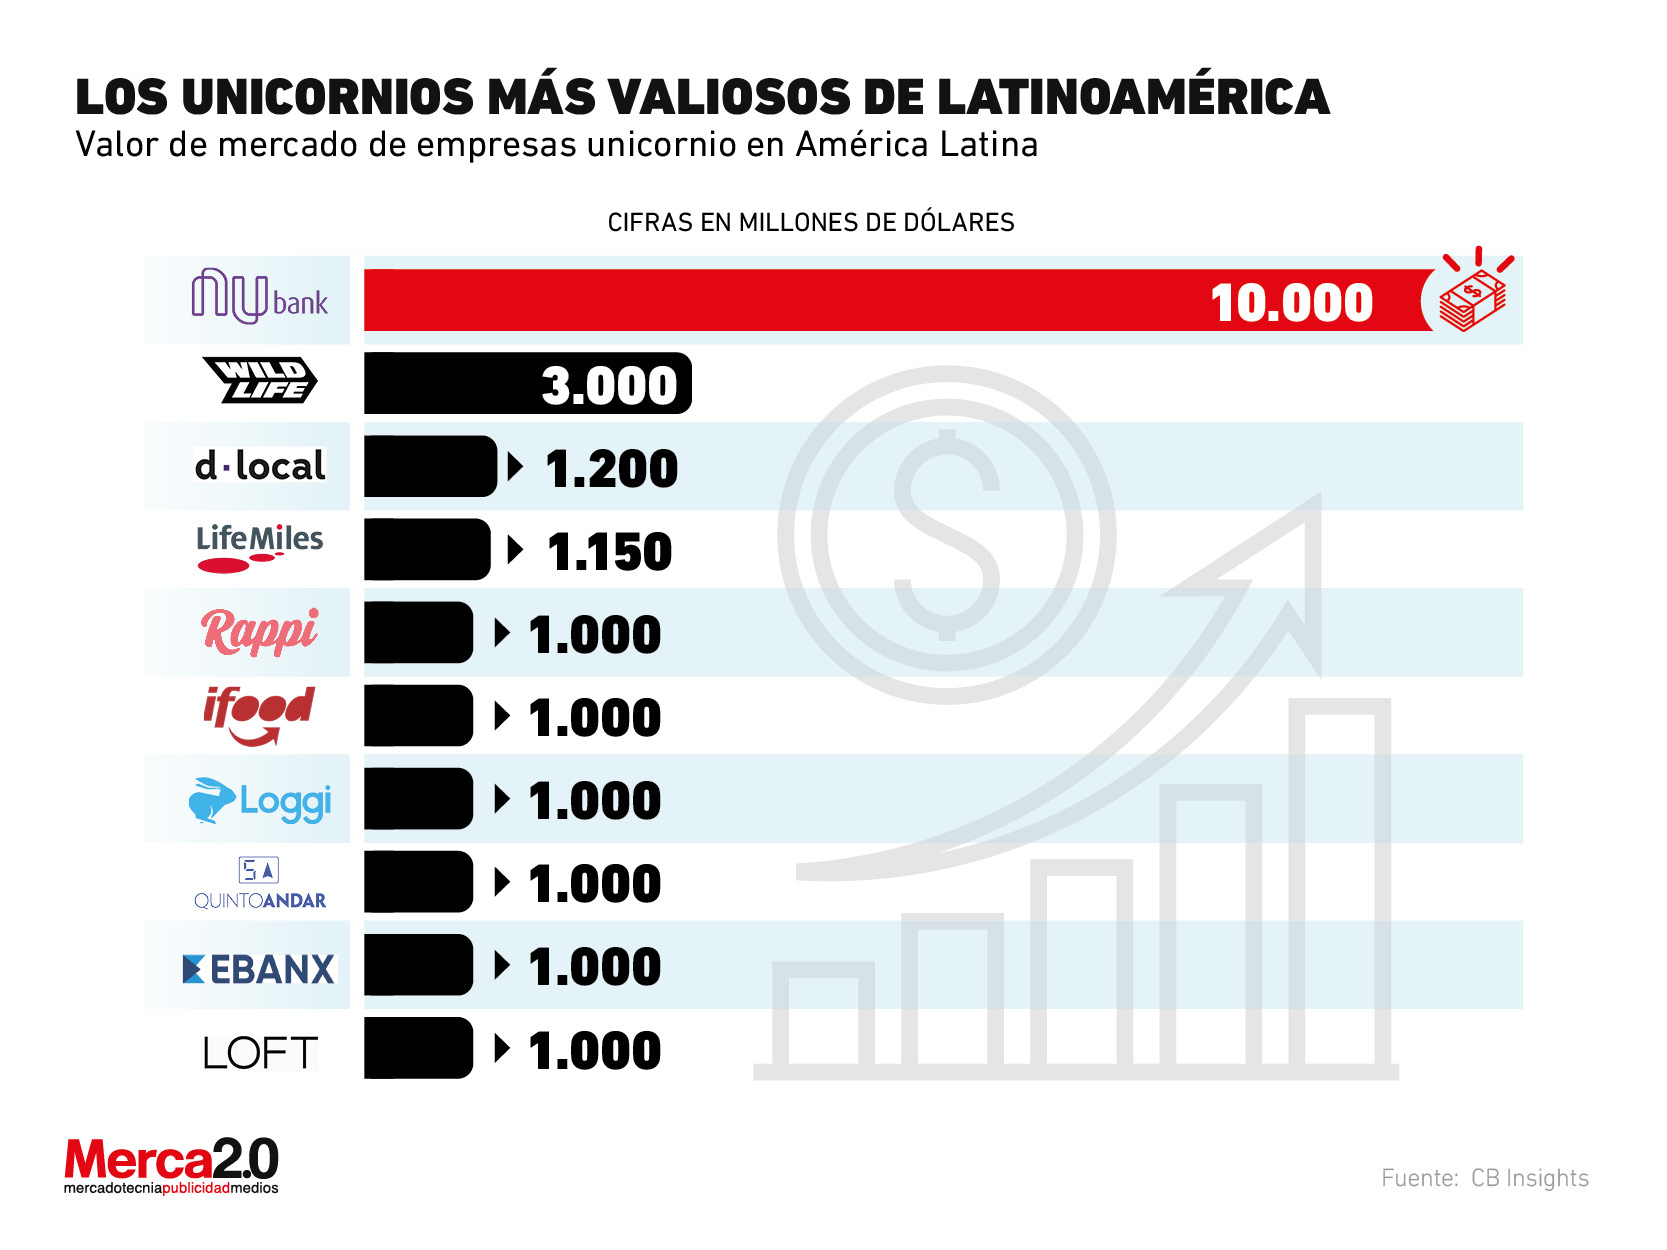 Estas son las compañías unicornio de mayor valor en Latinoamérica